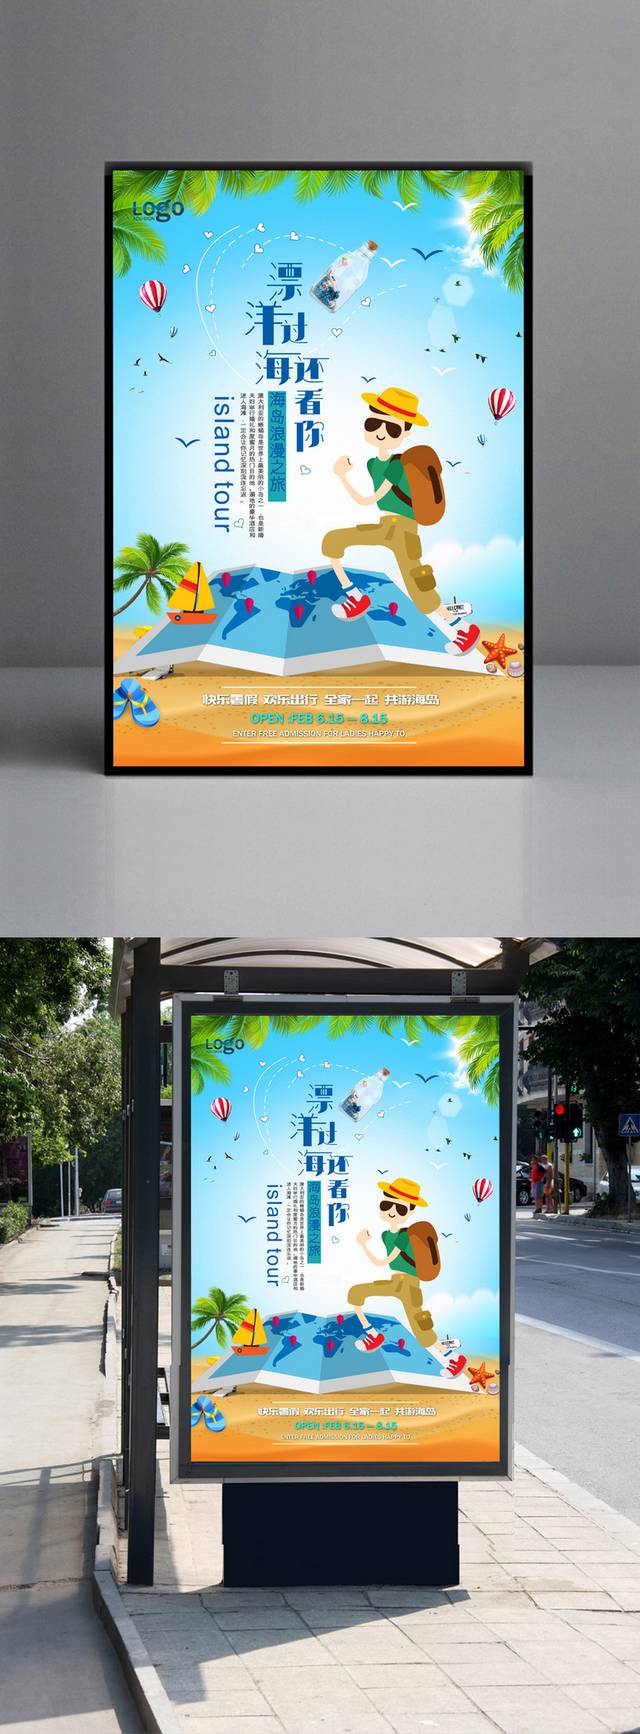 精美夏季旅游海报模板设计下载